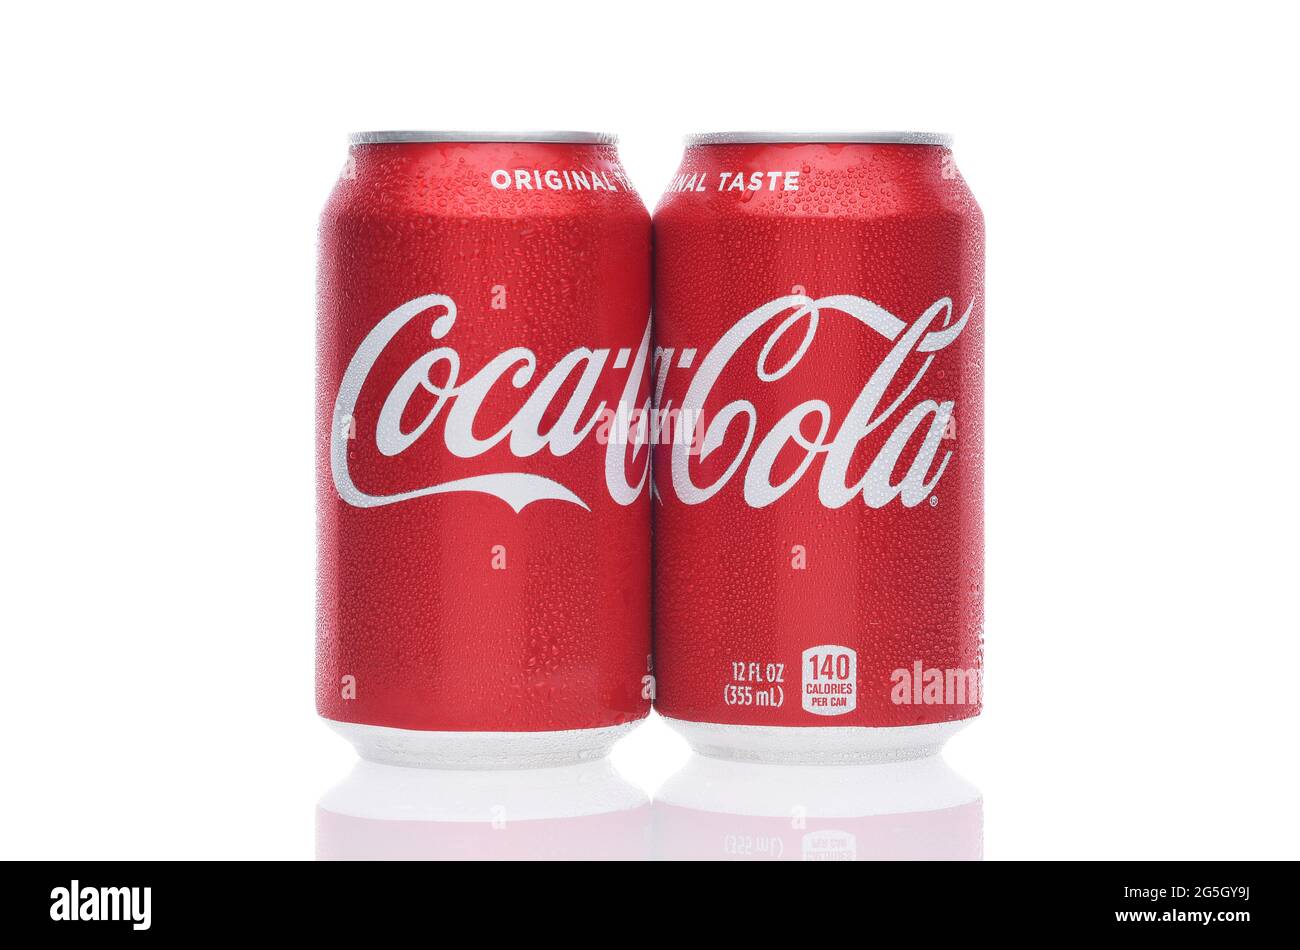 IRVINE, CALIFORNIA - 26 GIUGNO 2021: Due lattine di Coca-Cola. Il Coca Cola è una delle bevande gassate preferite al mondo. Foto Stock